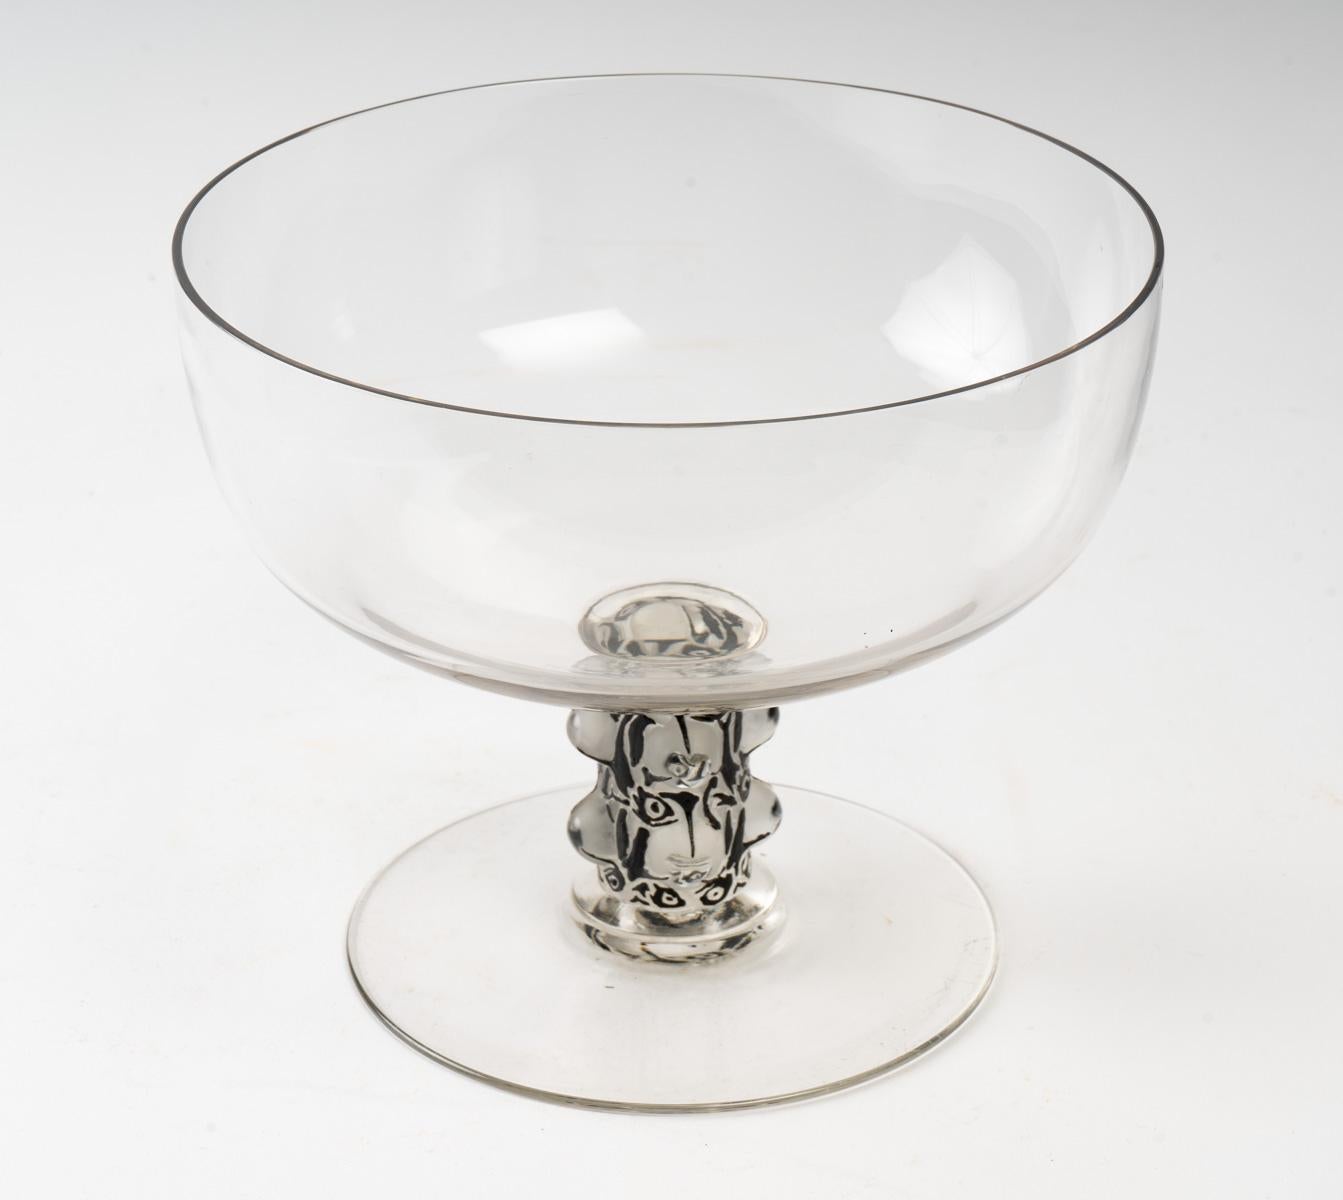 Art Deco 1926 René Lalique Saint Denis Bowl Vase Glass with Black Enamel, Fish Design